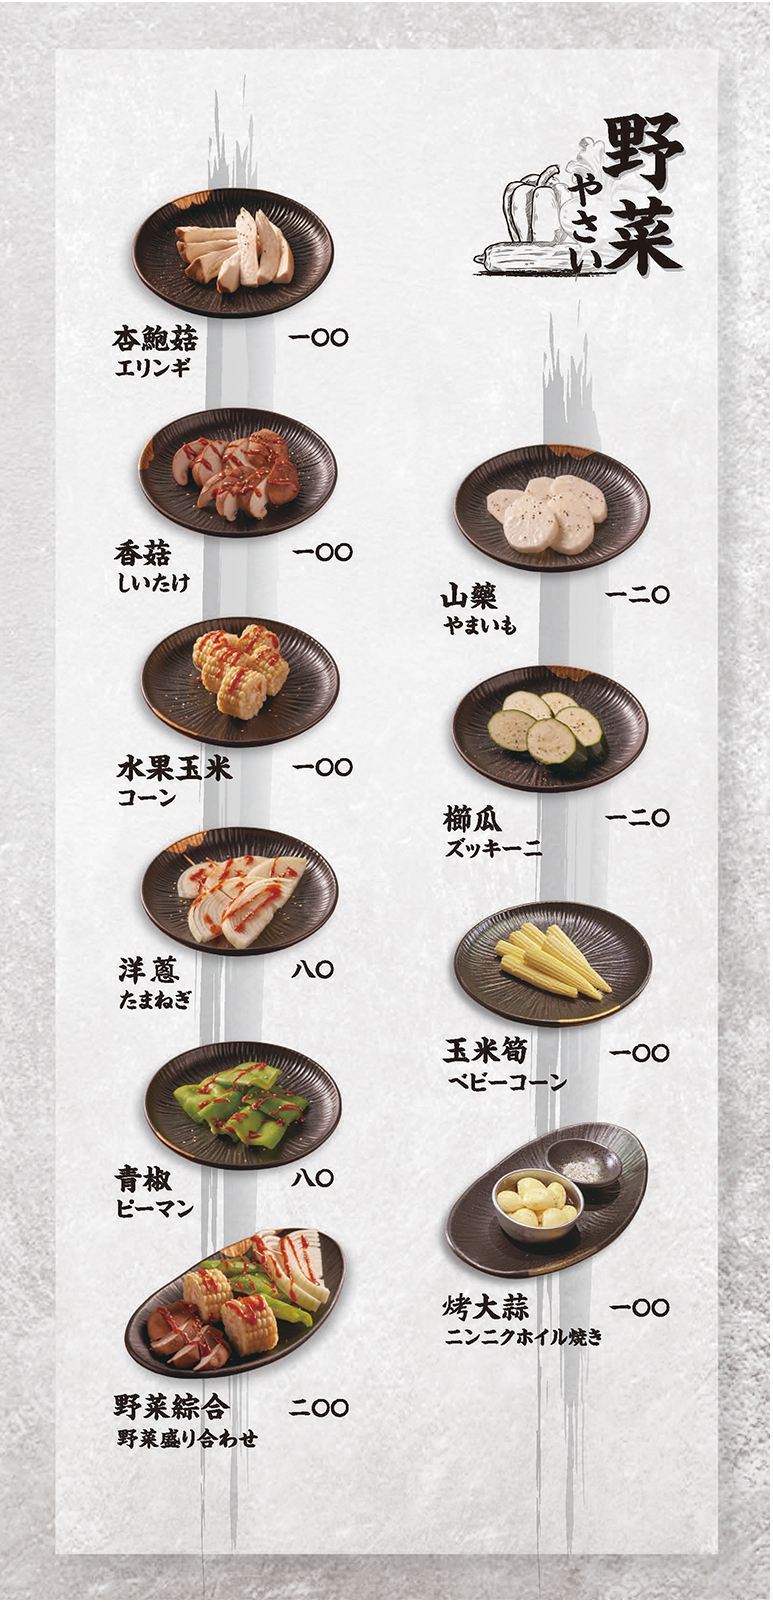 上吉燒肉-菜單-野菜、嚴選海鮮、海鮮